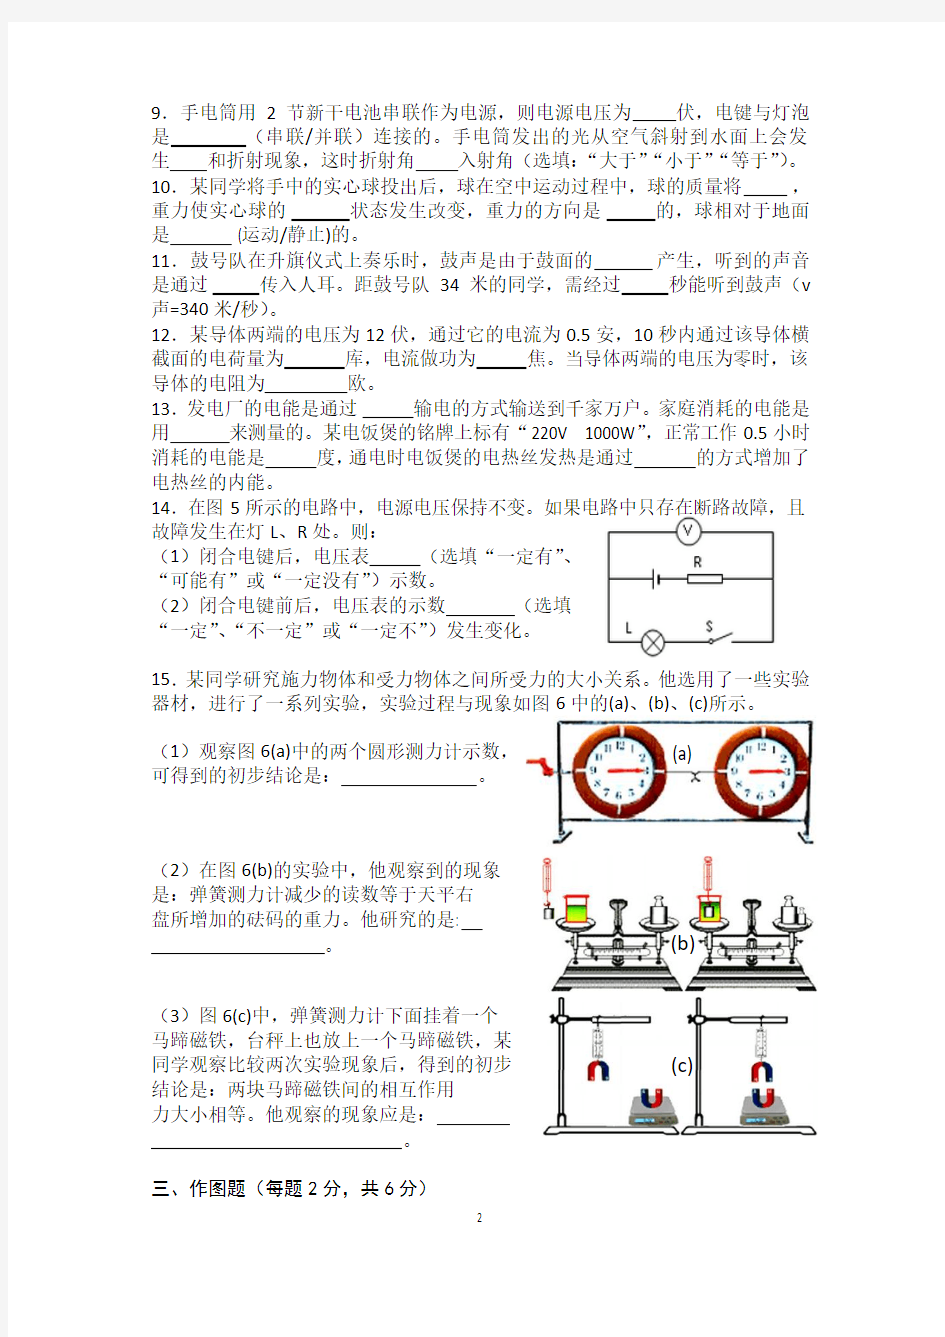 2014上海中考闵行区物理三模试卷及答案